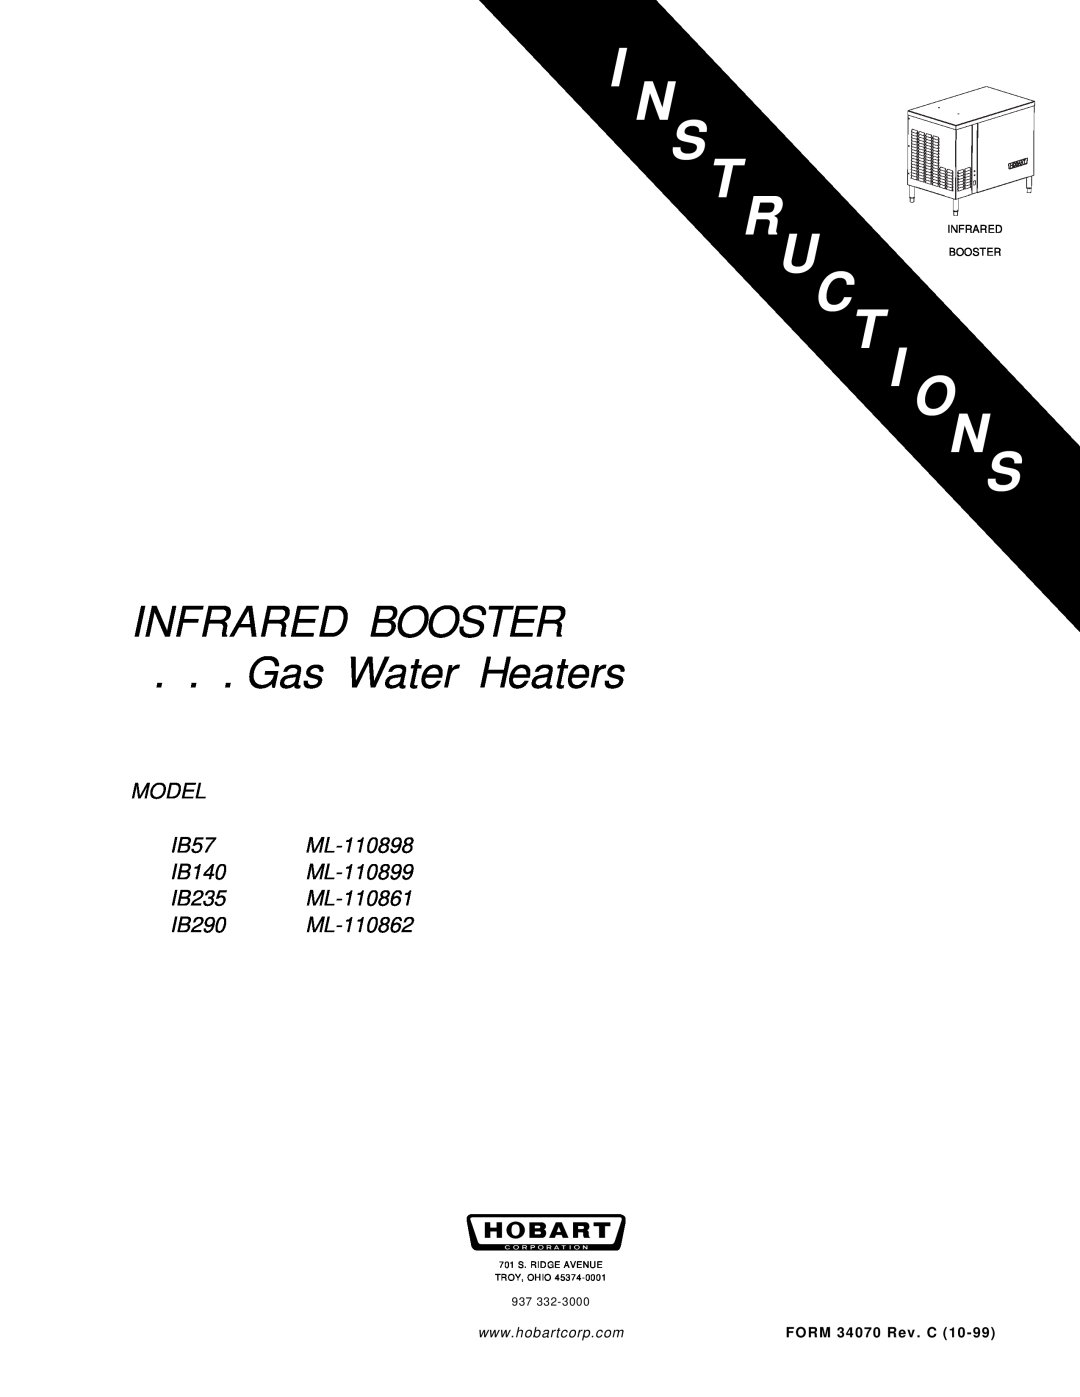 Hobart IB290 ML-110862 manual Uct I O, Infrared Booster, Gas Water Heaters, MODEL IB57 ML-110898 IB140 ML-110899 